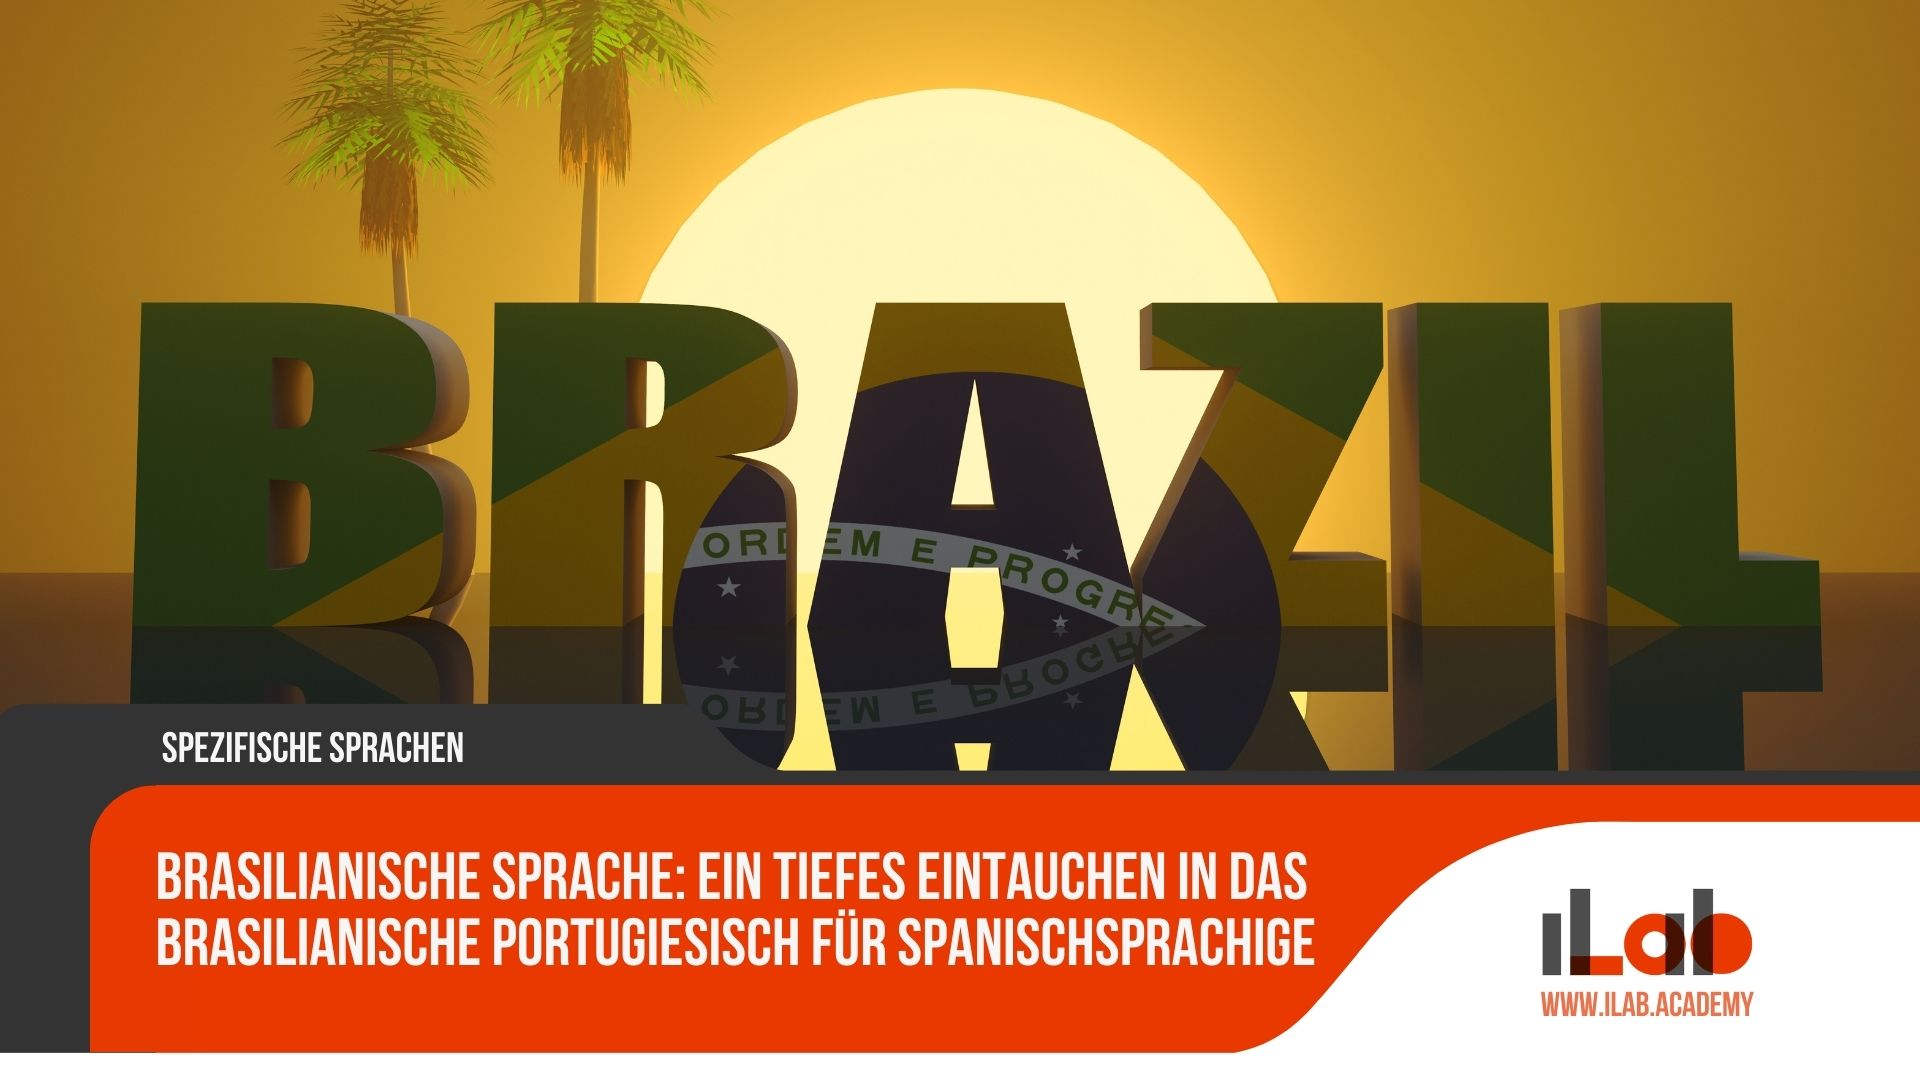 Brasilianische Sprache: ein tiefes Eintauchen in das brasilianische Portugiesisch für Spanischsprachige